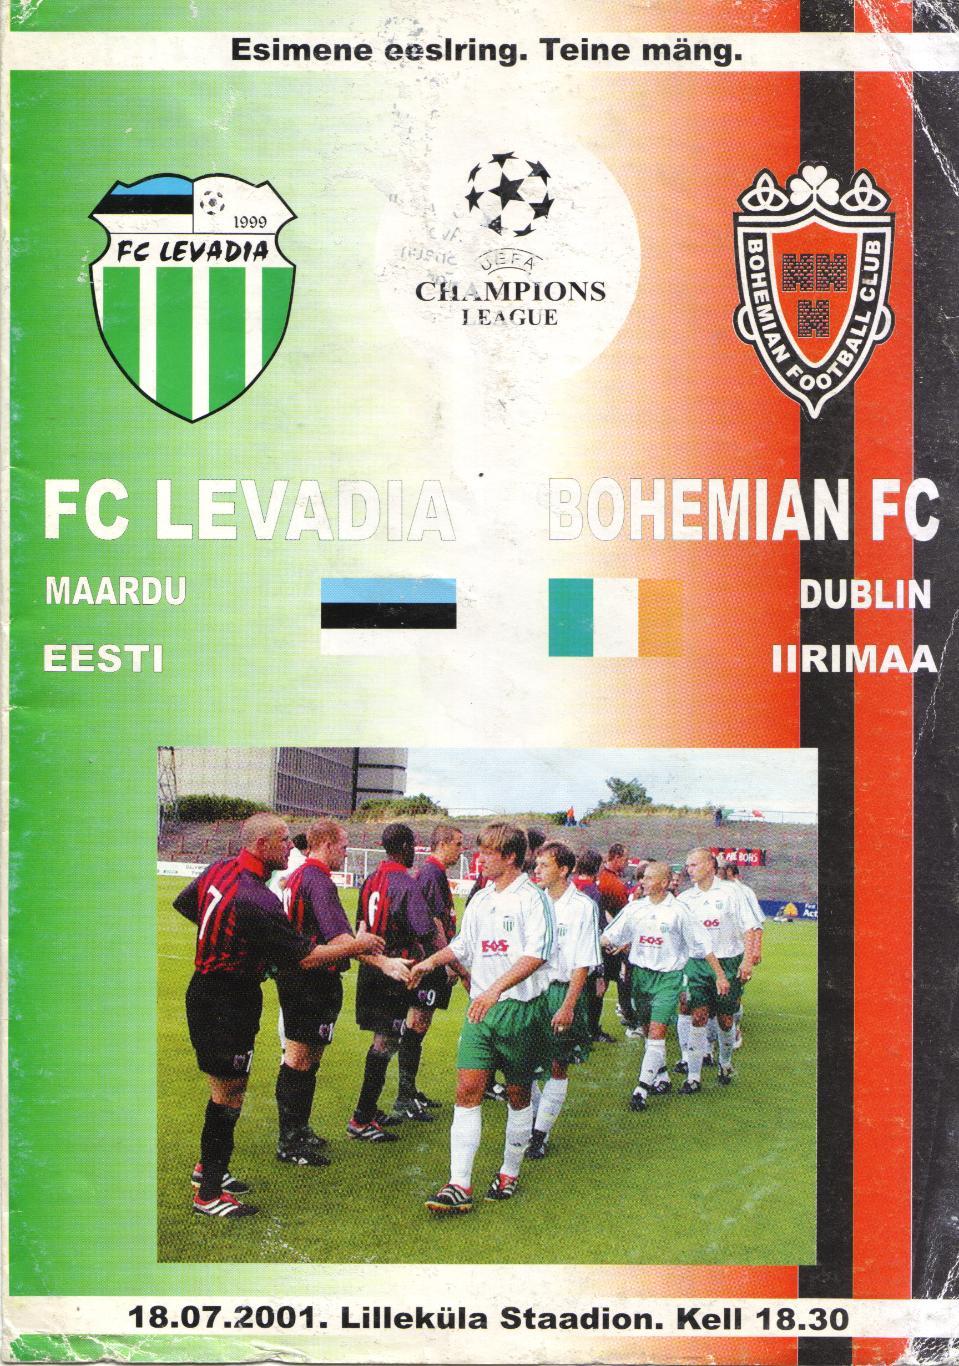 Левадия Эстония - Богемианс Ирландия 18.07.2001